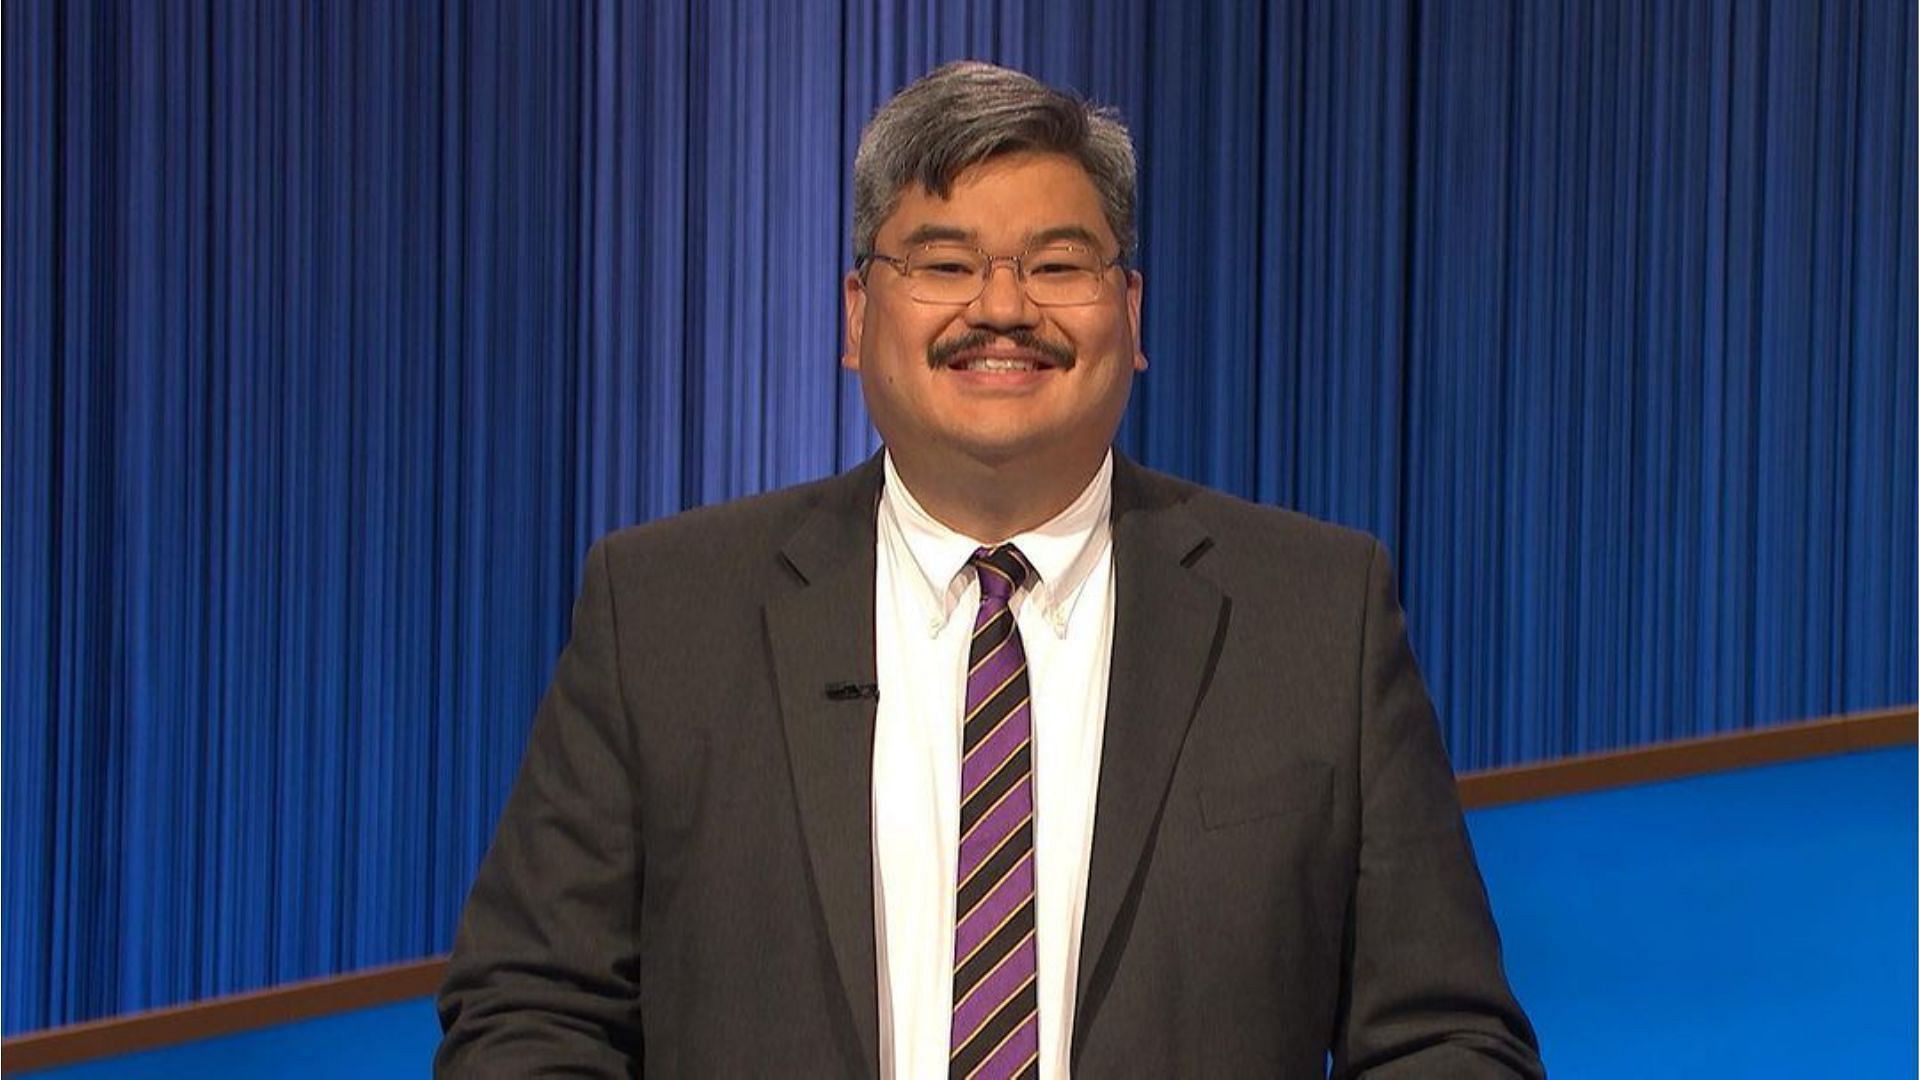 Luigi de Guzman won Jeopardy Season 38